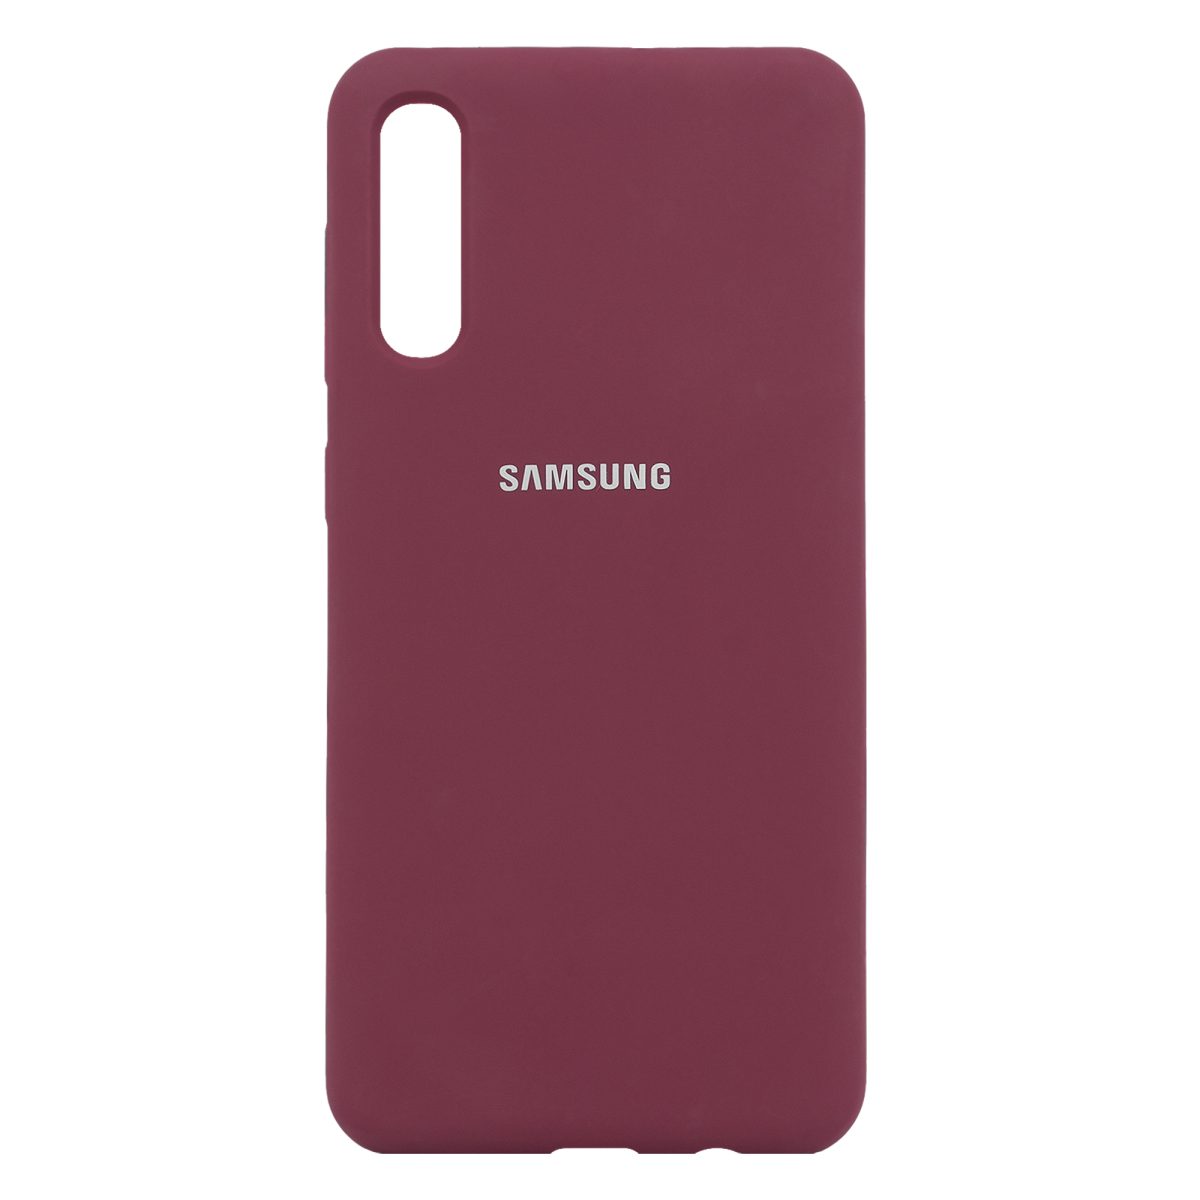 کاور سیلیکونی قرمز مدل Shape مناسب برای گوشی موبایل سامسونگ Galaxy A30, A50s